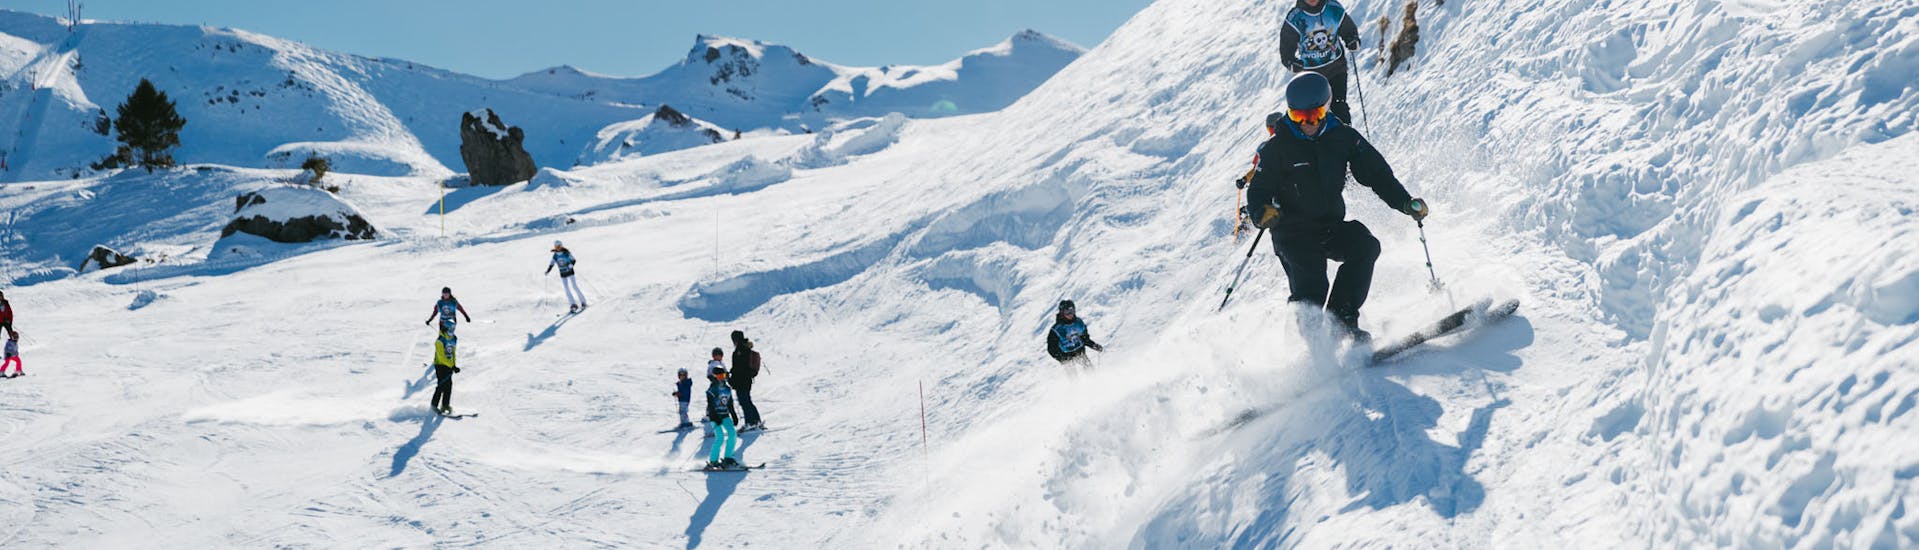 Clases de esquí para adolescentes y adultos - Máx. 8 por grupo.